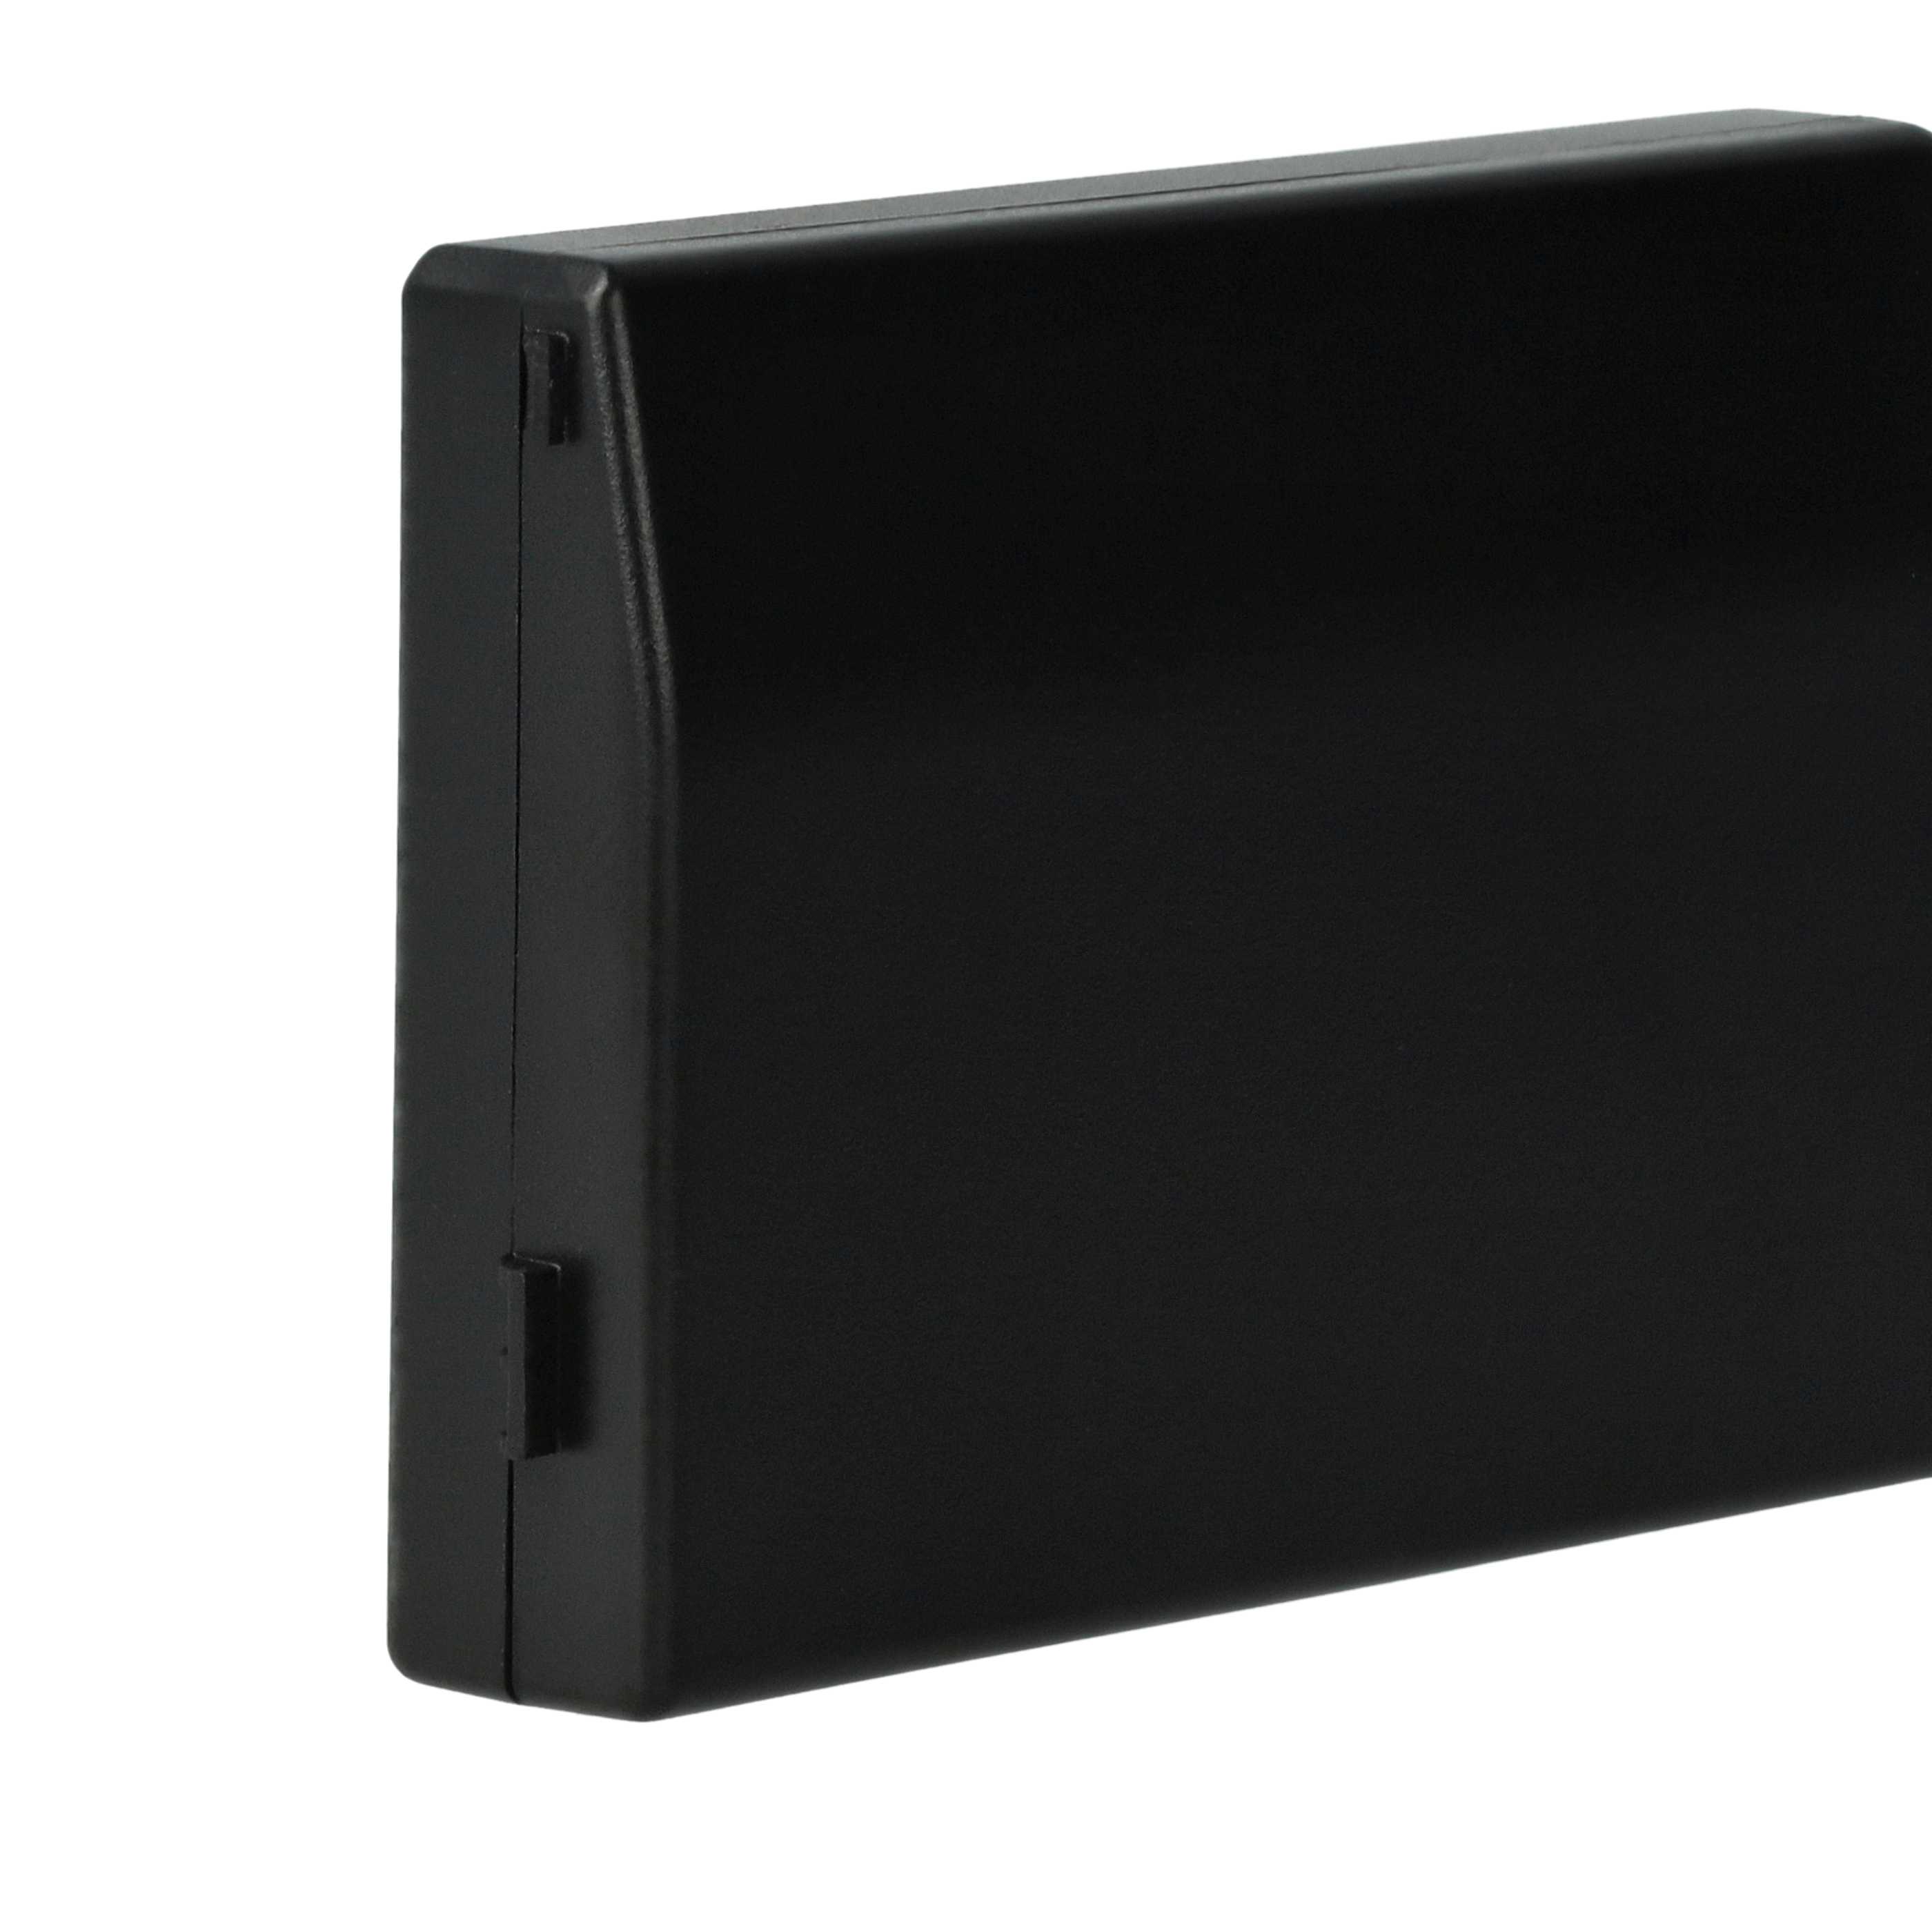 Akumulator do konsoli Sony zamiennik Sony PSP-S110 - 1200 mAh, 3,7 V